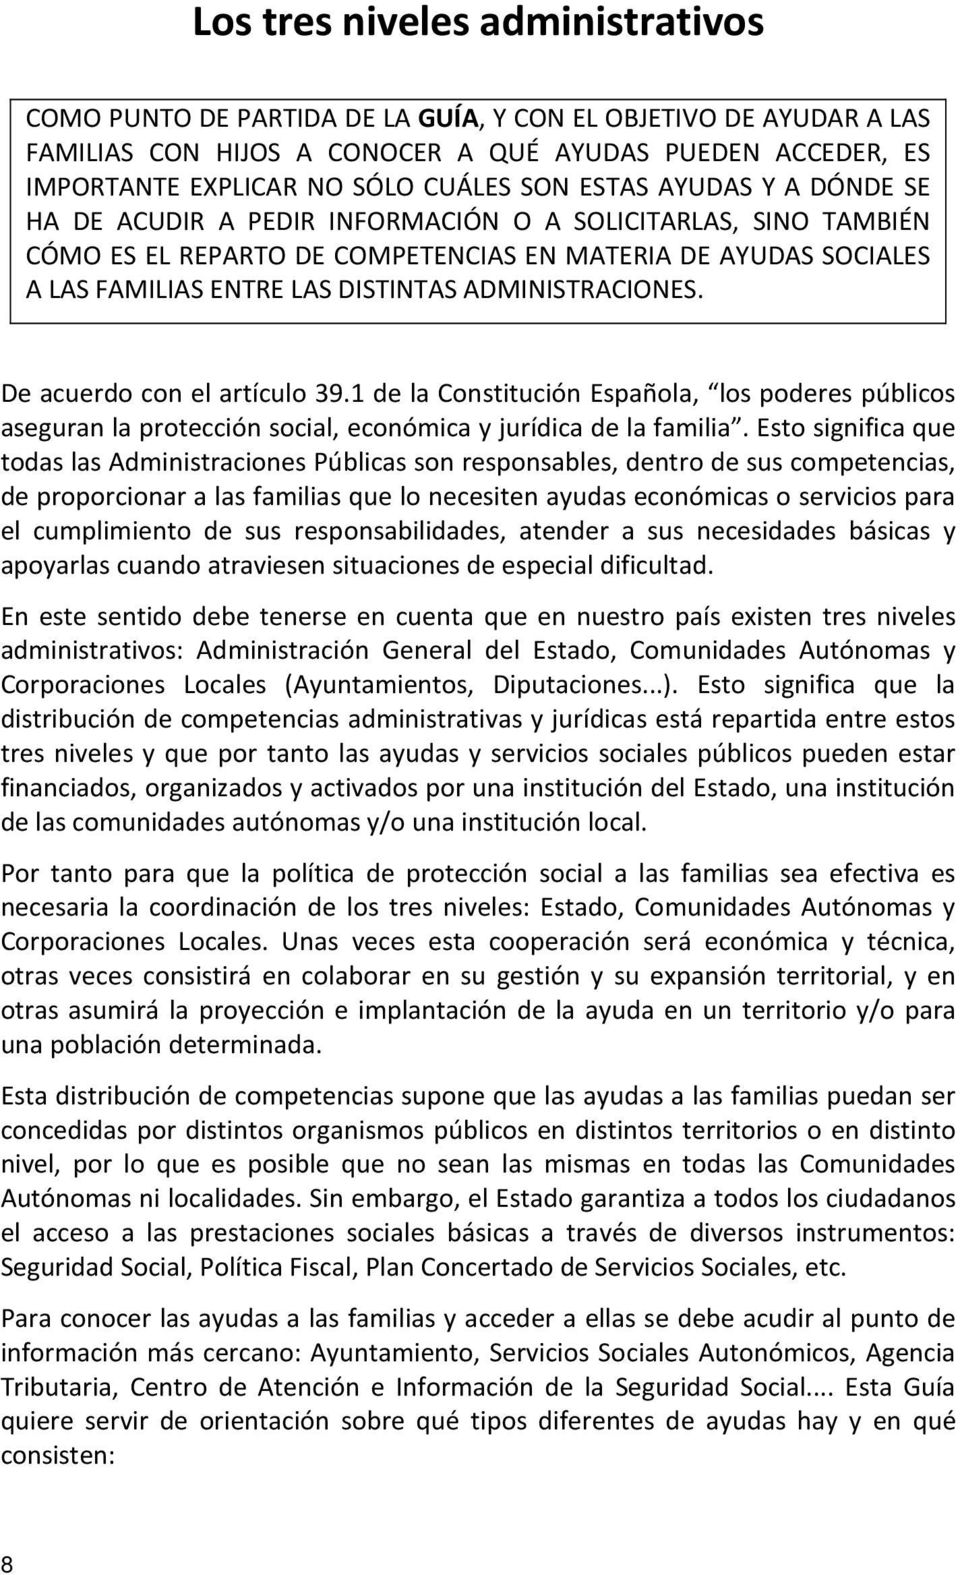 ADMINISTRACIONES. De acuerdo con el artículo 39.1 de la Constitución Española, los poderes públicos aseguran la protección social, económica y jurídica de la familia.